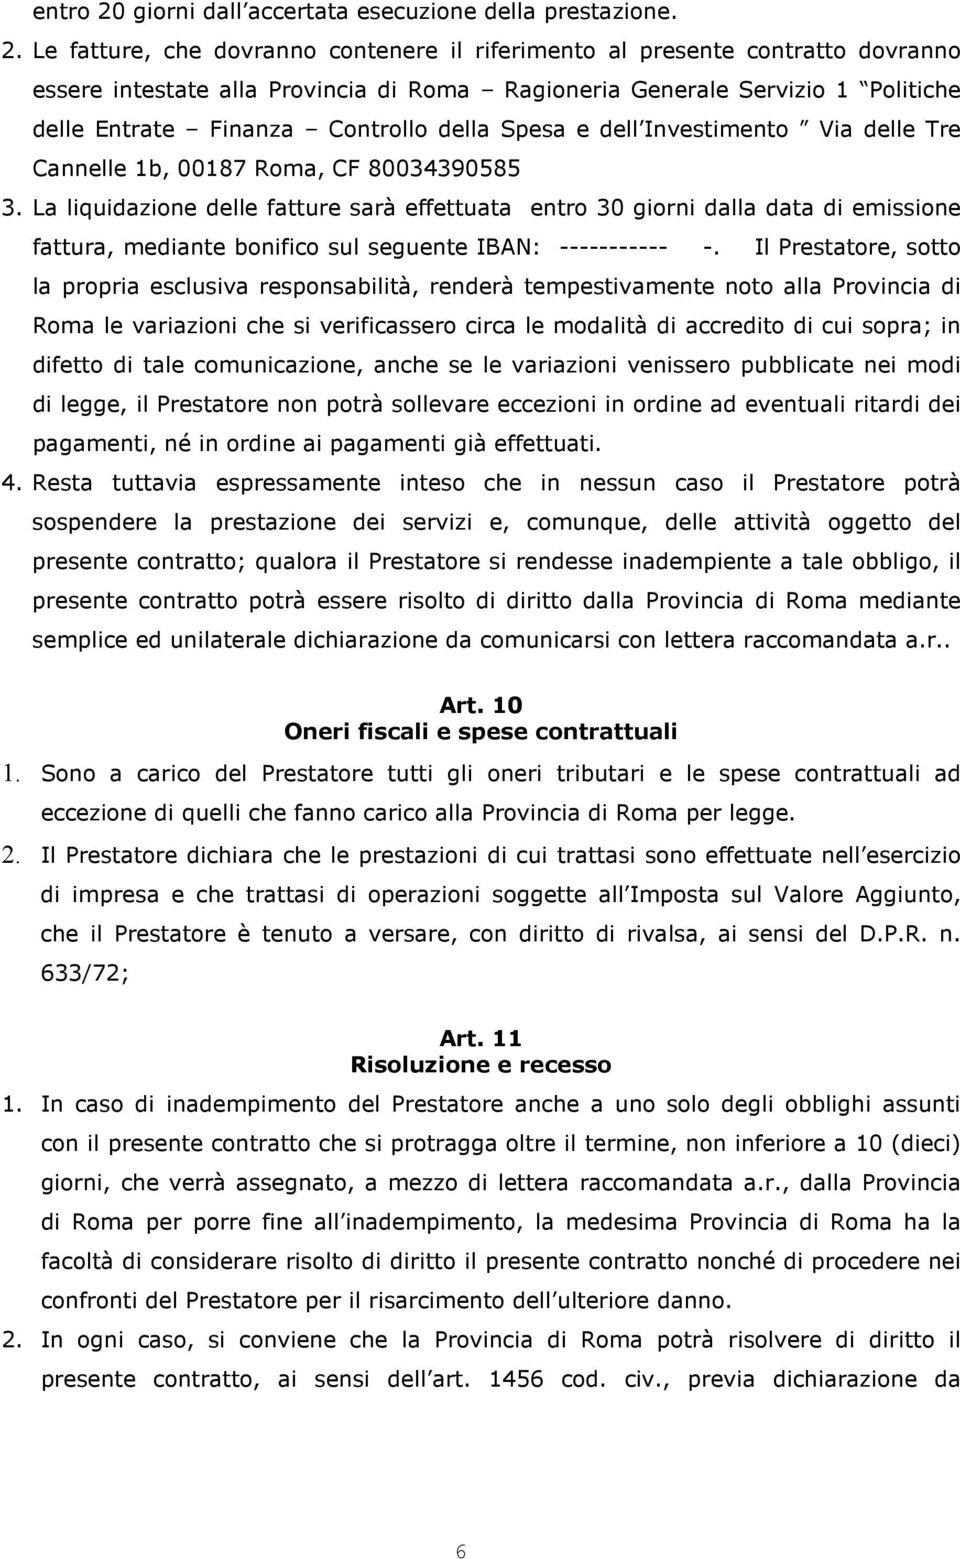 Le fatture, che dovranno contenere il riferimento al presente contratto dovranno essere intestate alla Provincia di Roma Ragioneria Generale Servizio 1 Politiche delle Entrate Finanza Controllo della